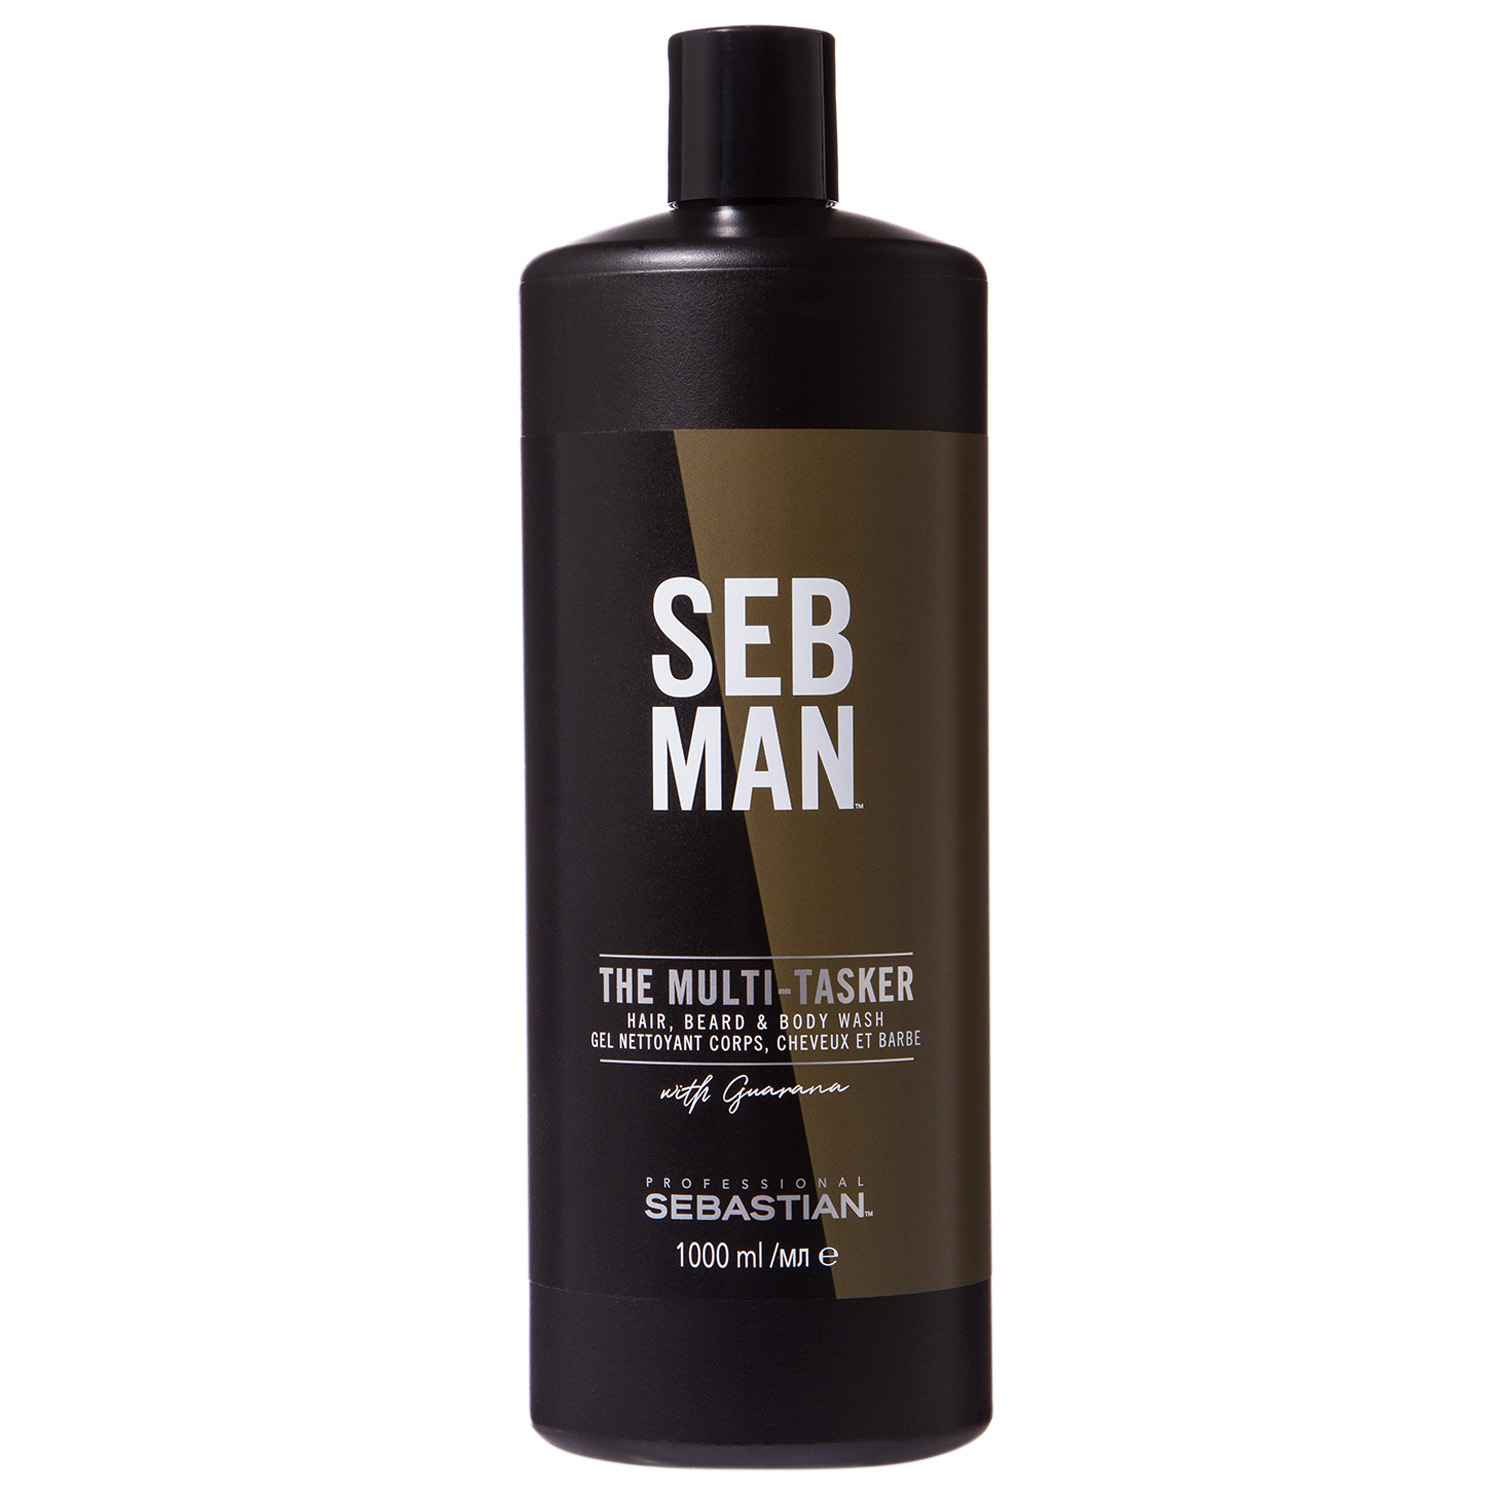 Sebman 3 в 1 Шампунь для ухода за волосами, бородой и телом 1000 мл (Sebman, )  - Купить